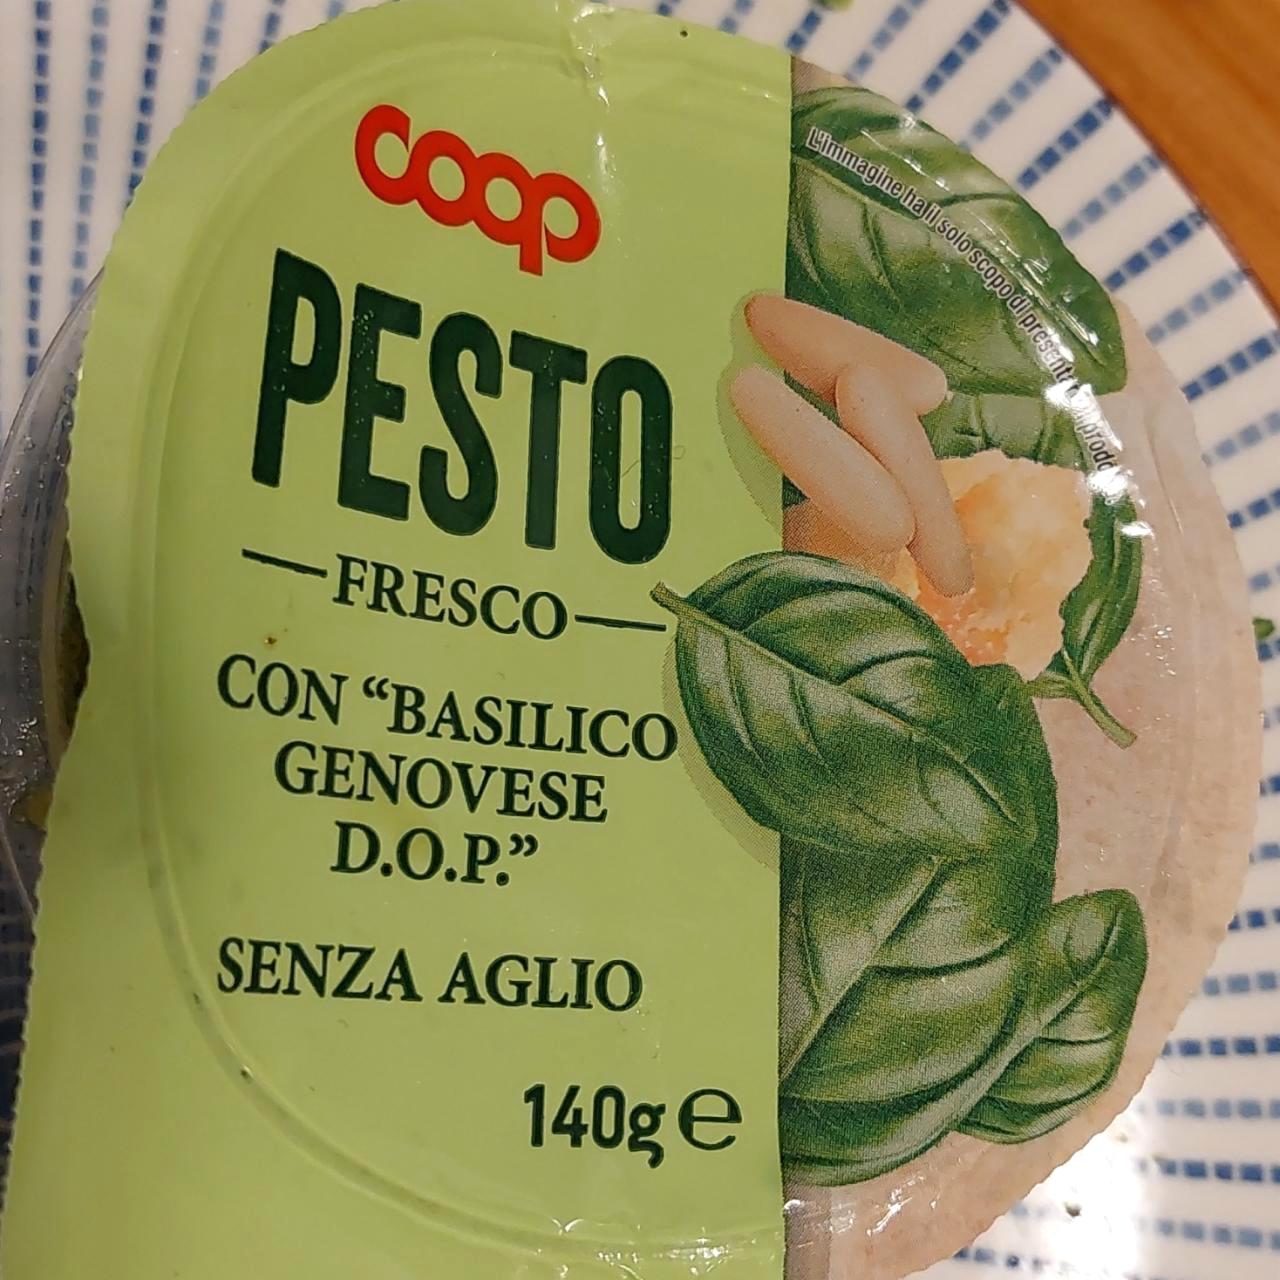 Képek - Pesto fresco con 'basilico genovese d.o.p.' Coop